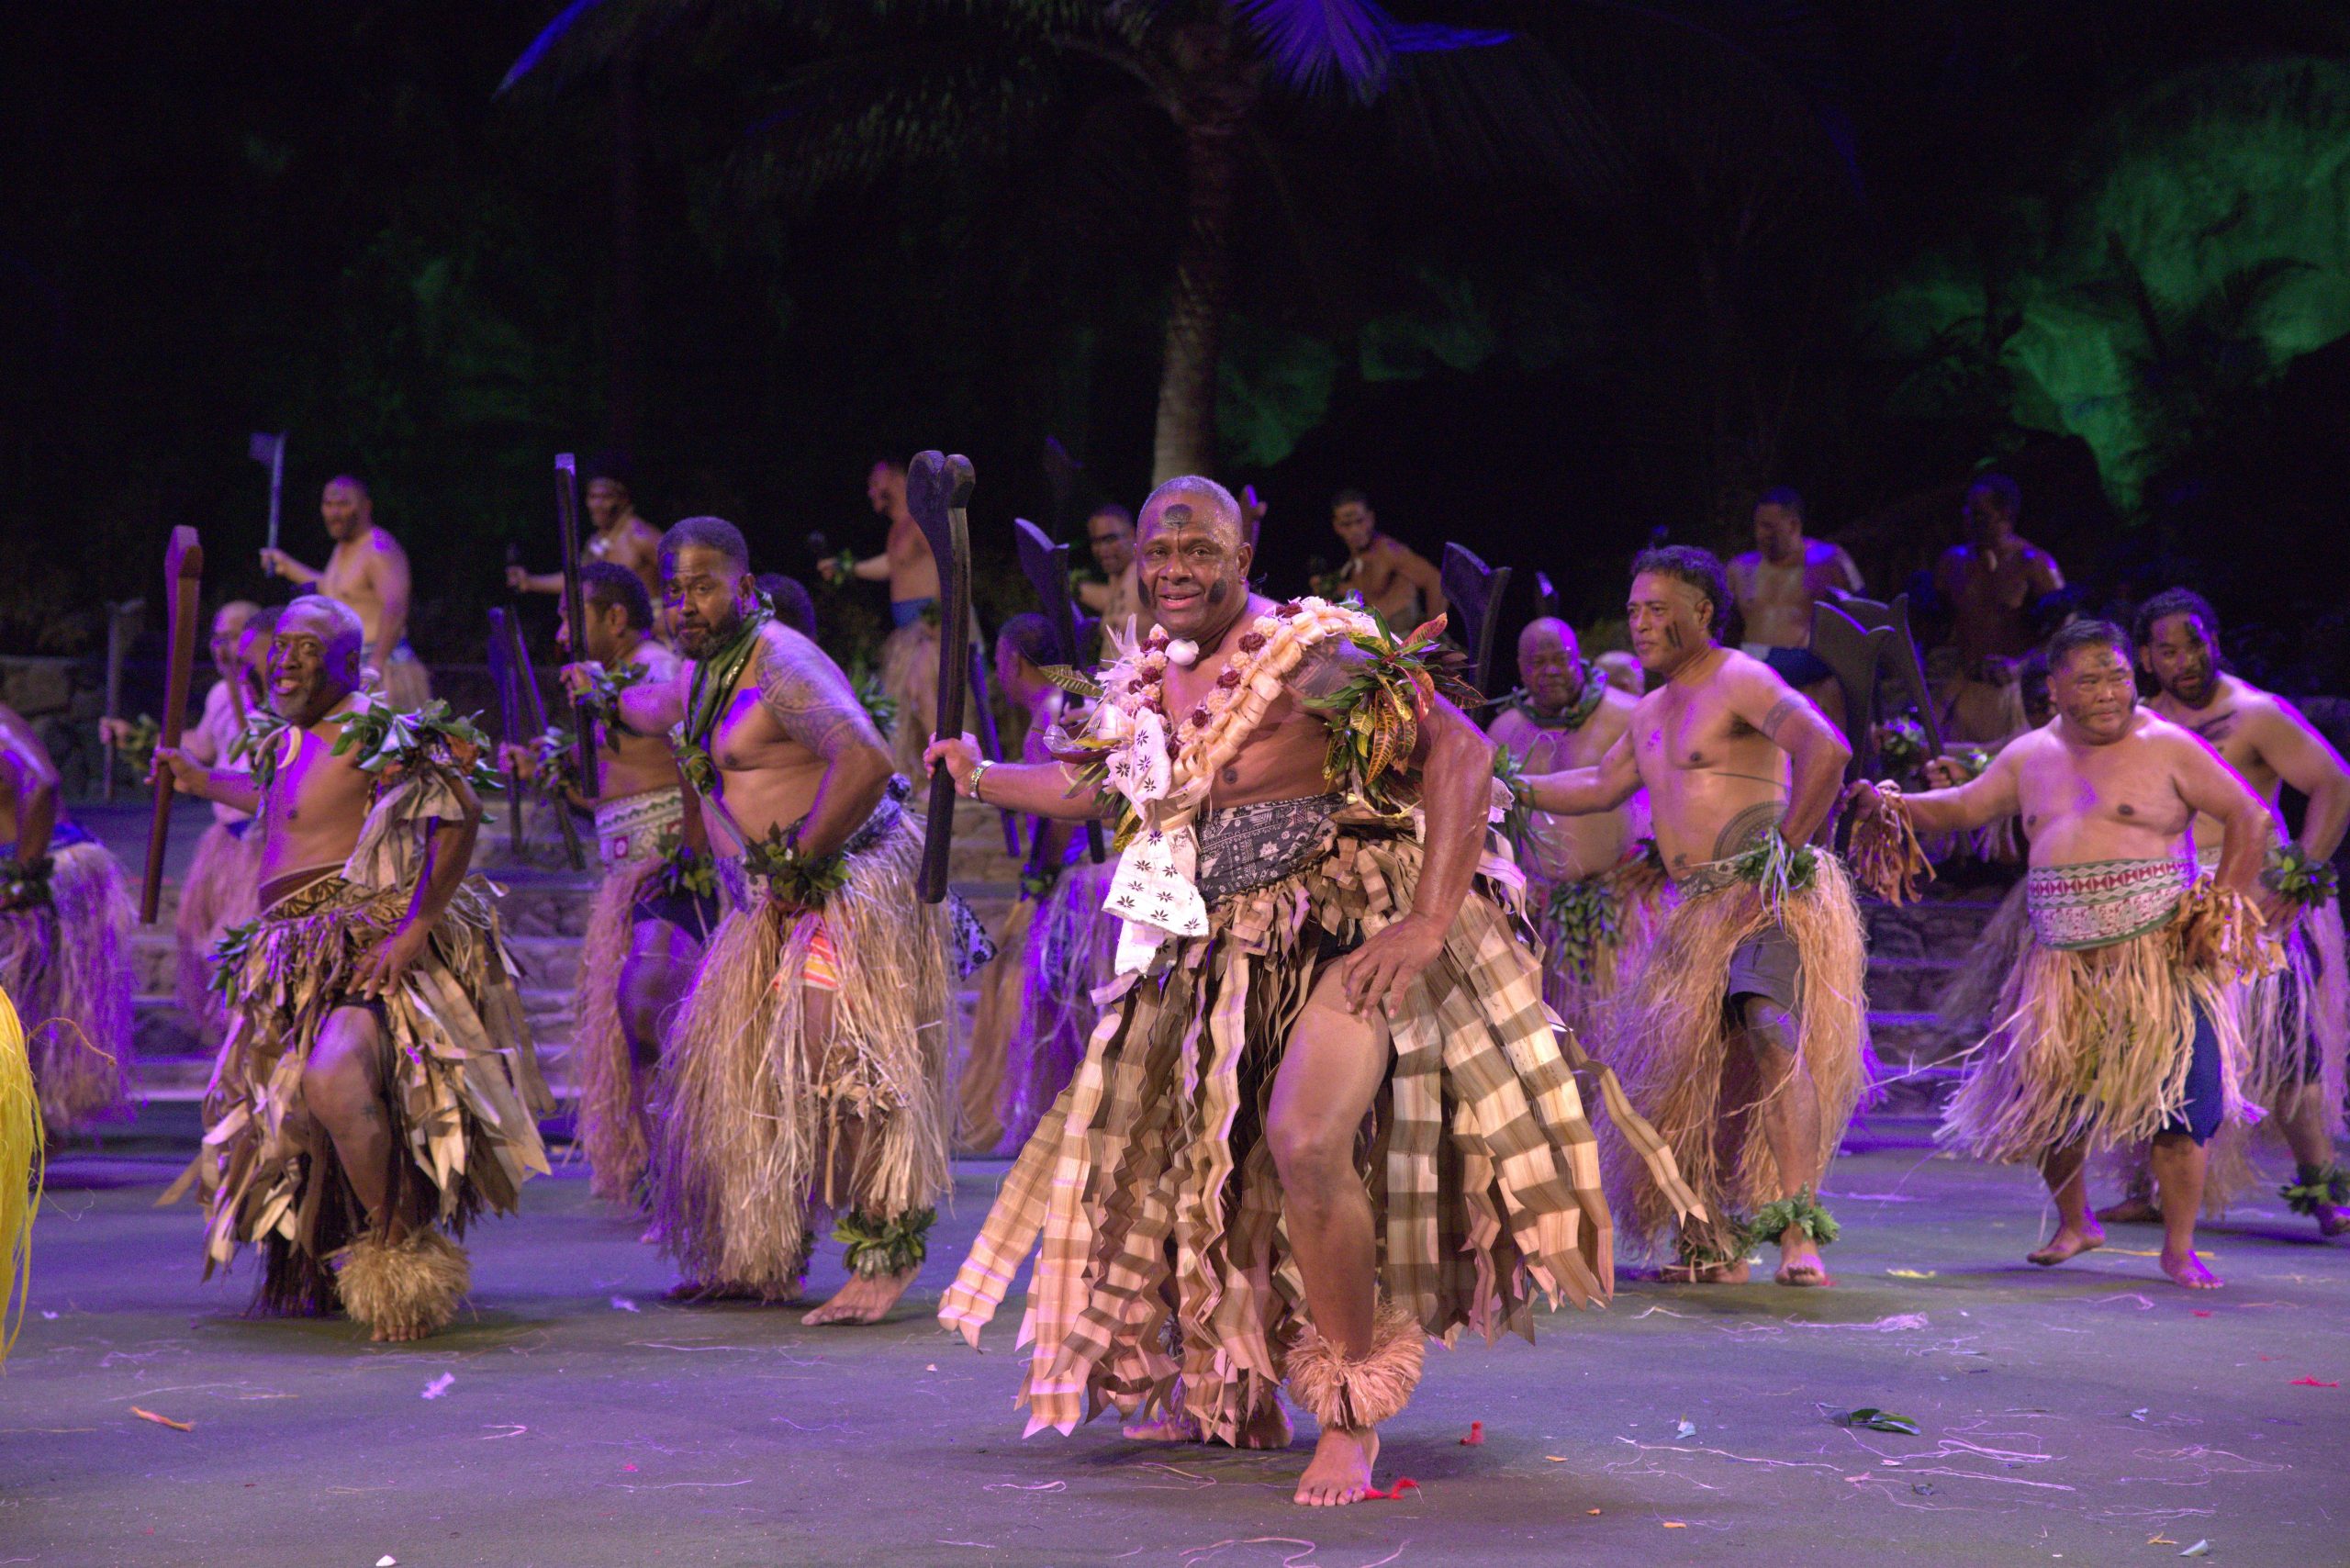 Fijian men performing